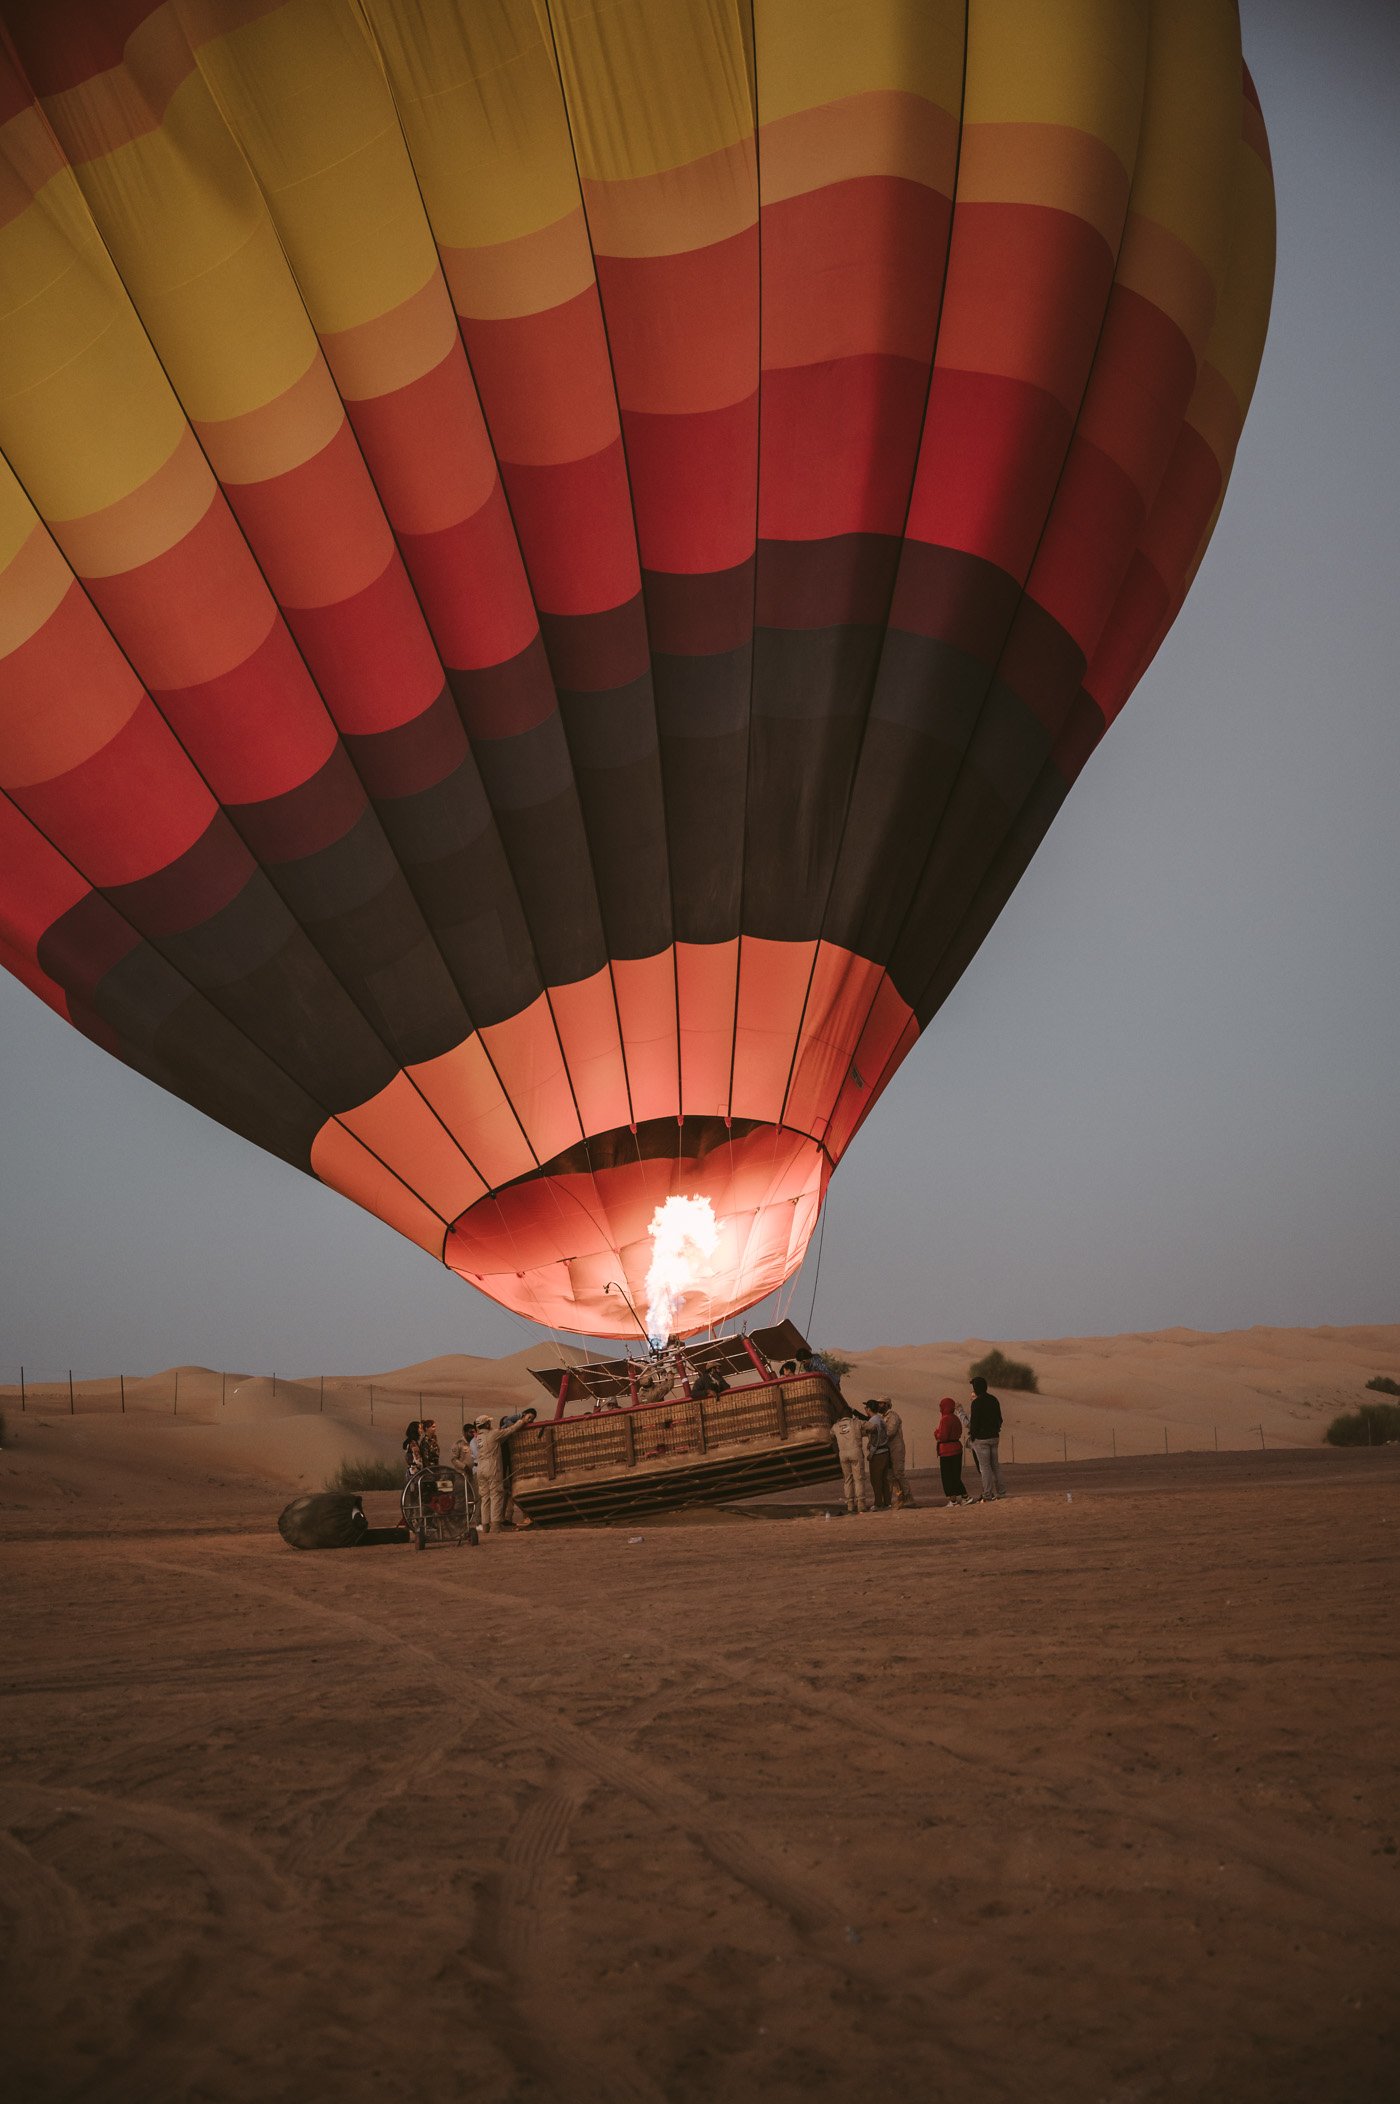 Hot air balloon ride in Dubai